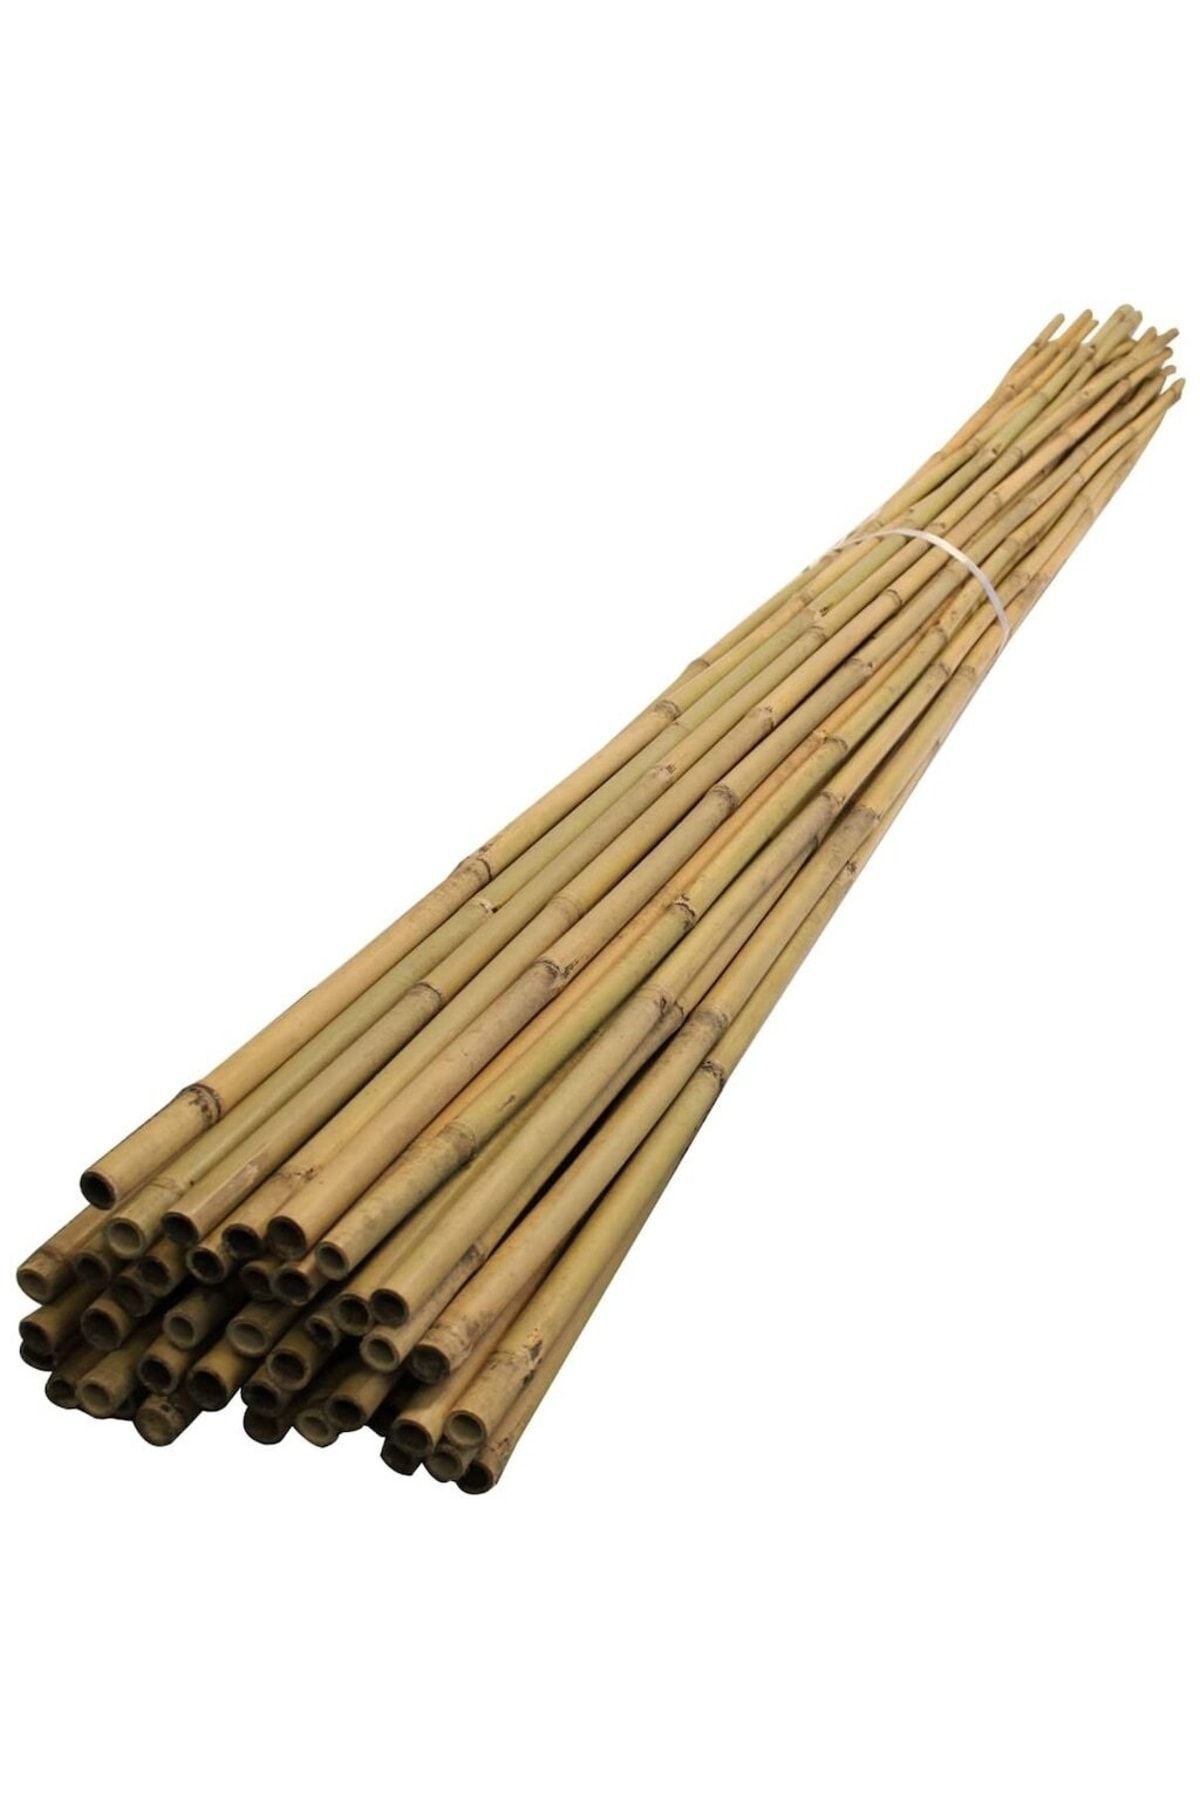 DORUK DEKOR 200 Cm Dekoratif Bambu Çubuk 10 Ad.